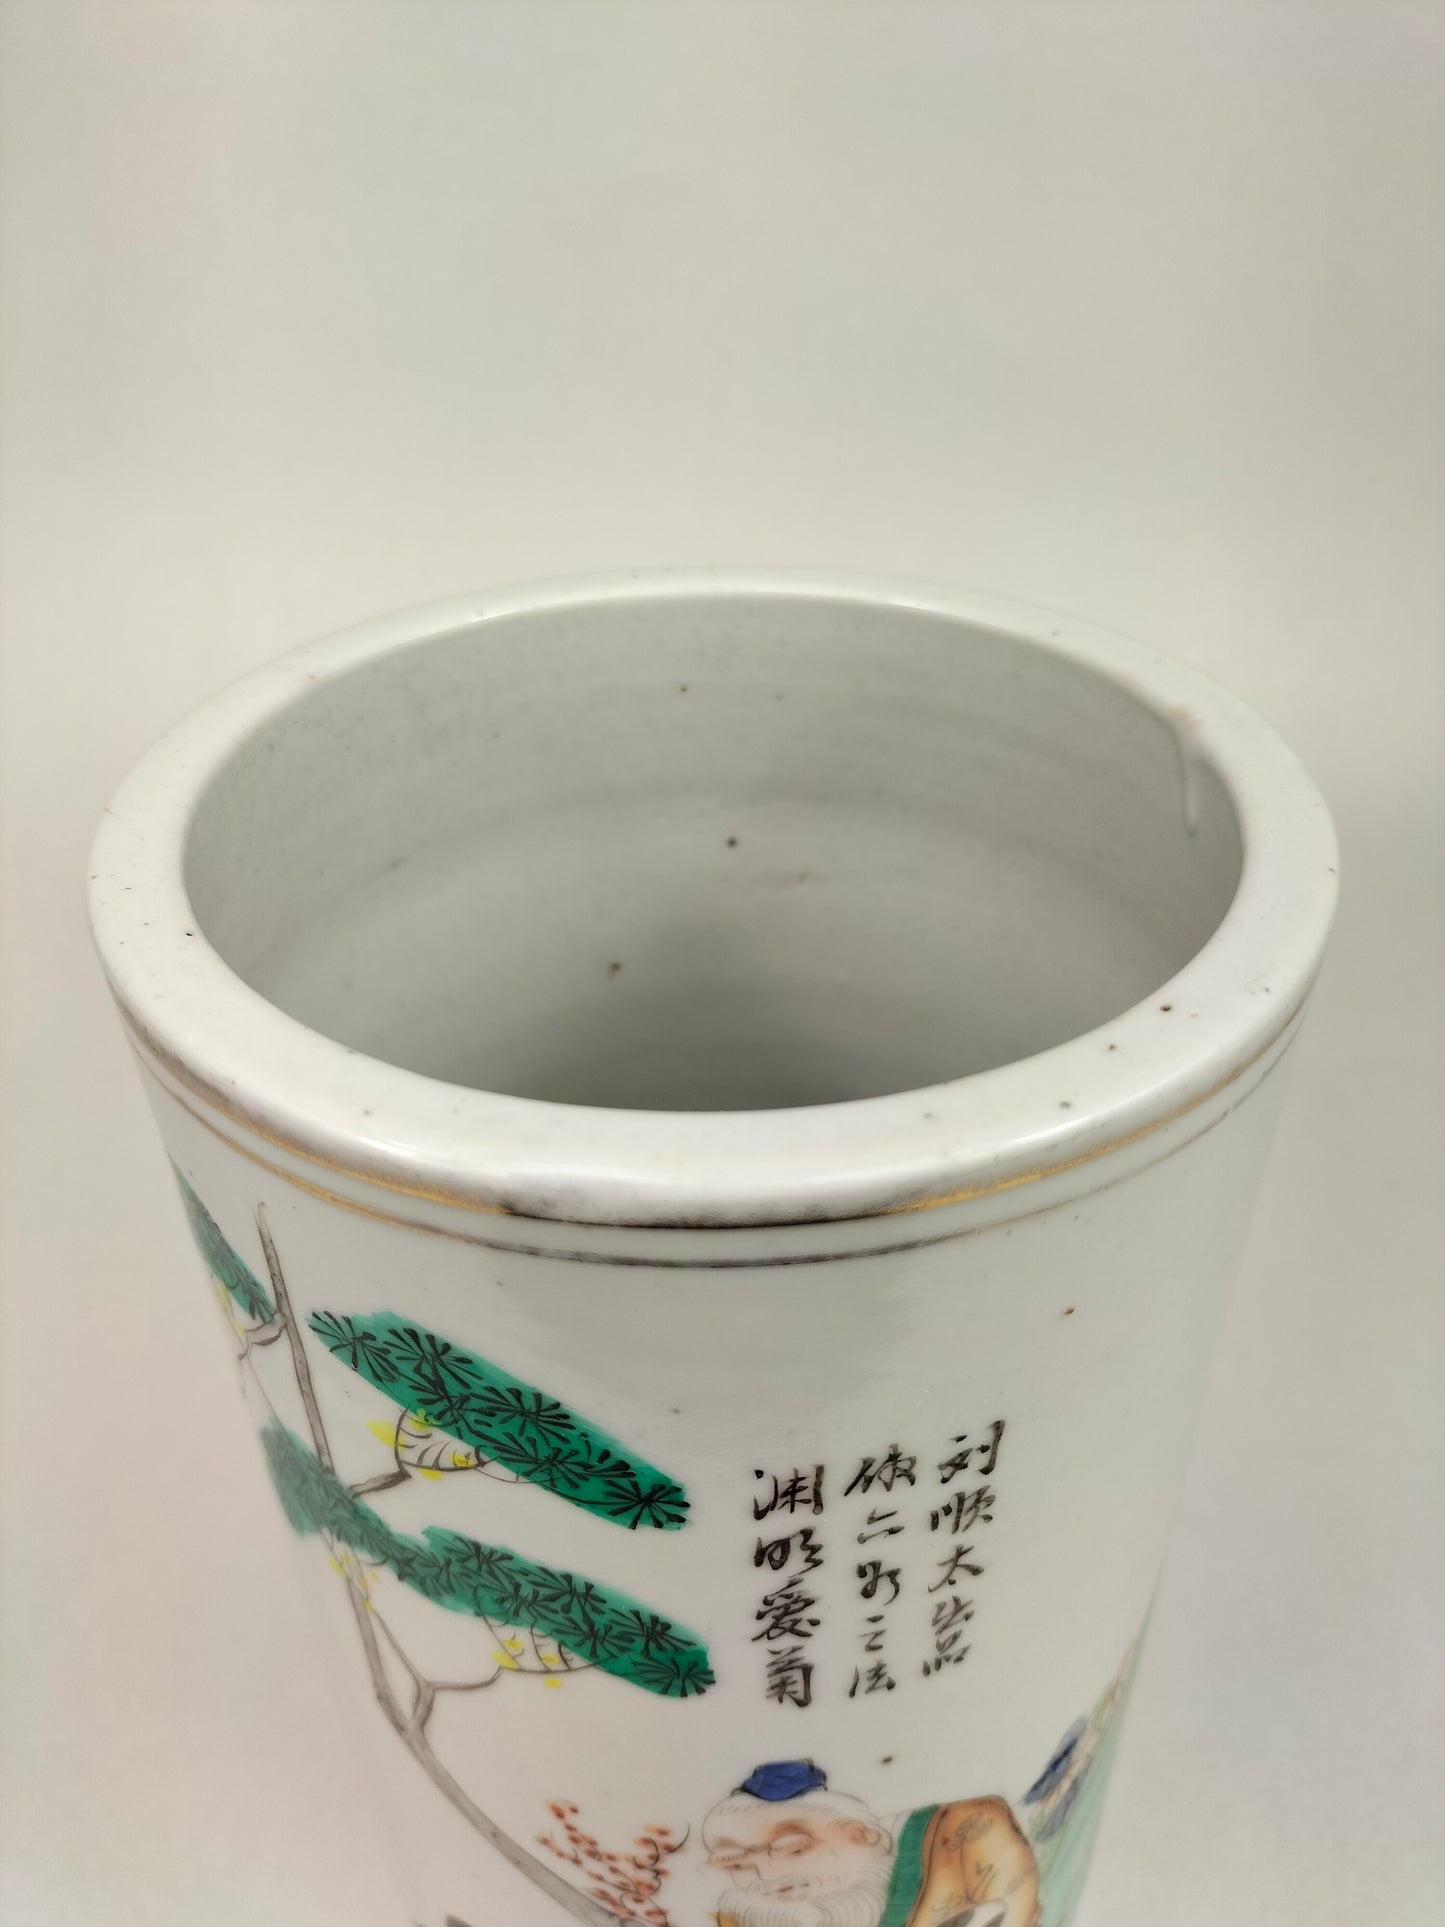 Ancien vase rouleau chinois à décor de sauge et d'enfants // Période République (1912-1949)